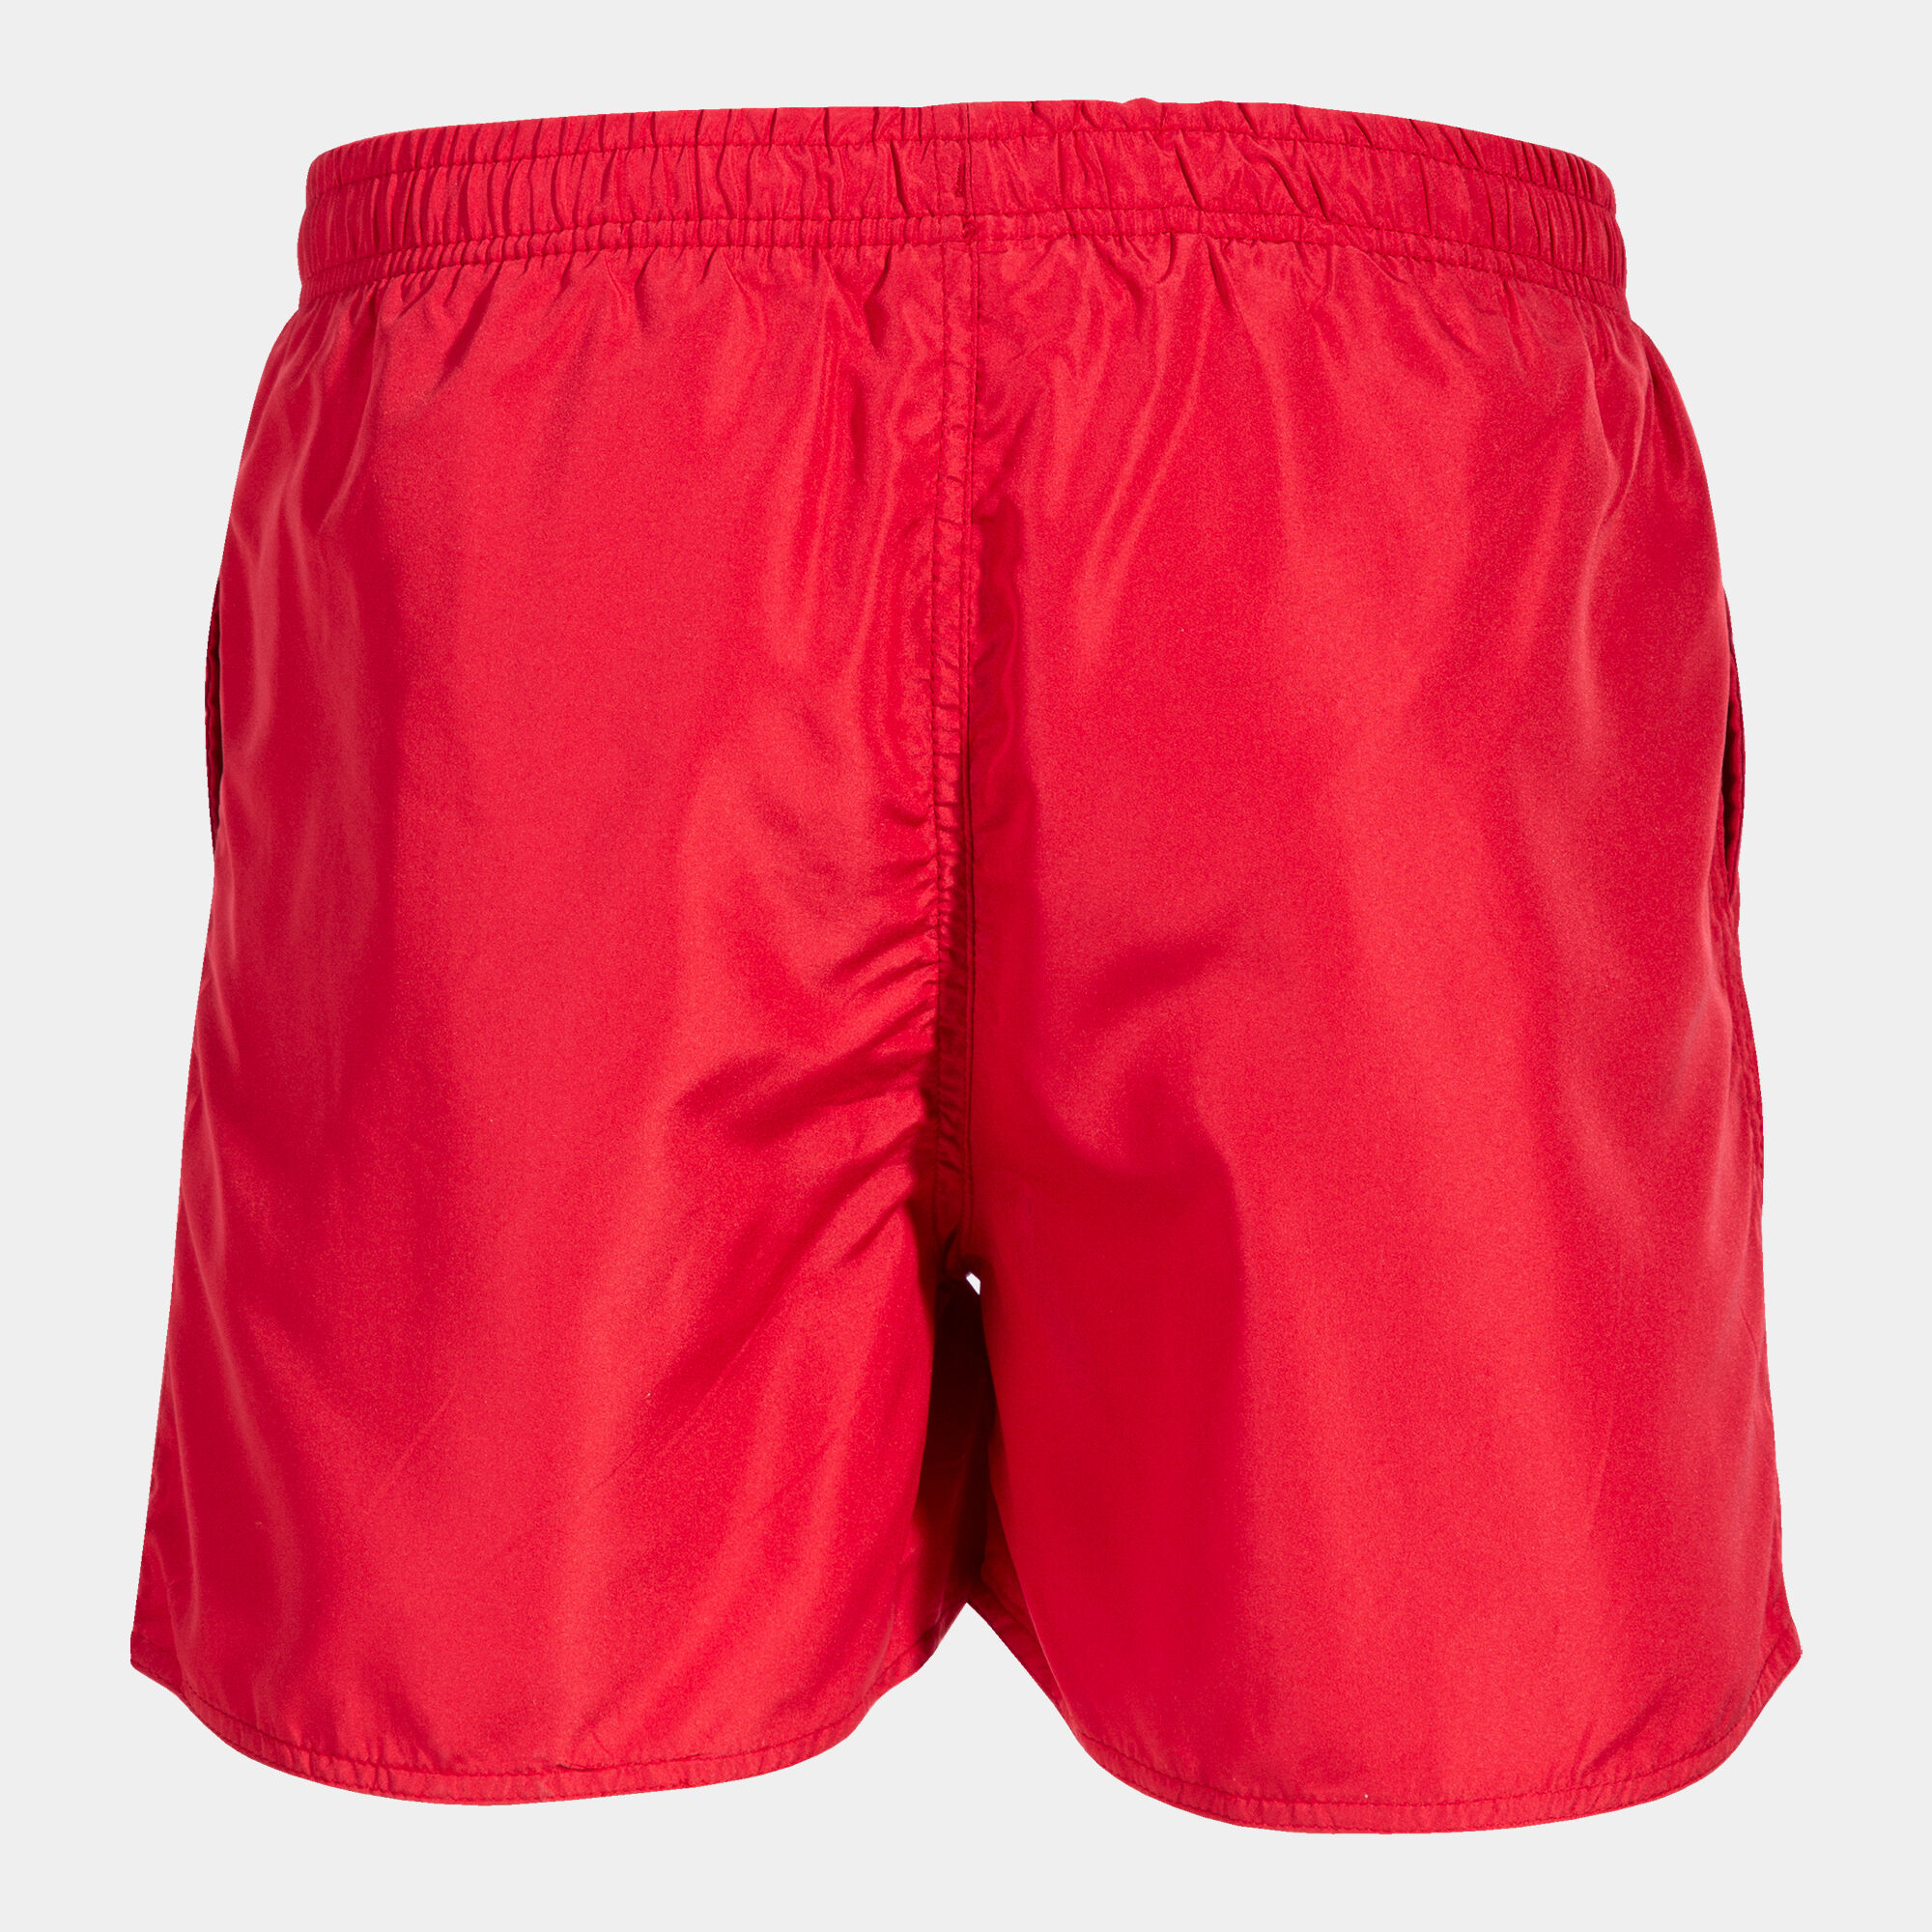 Pantaloni scurți bermude pentru plajă bărbaȚi Stripe roșu